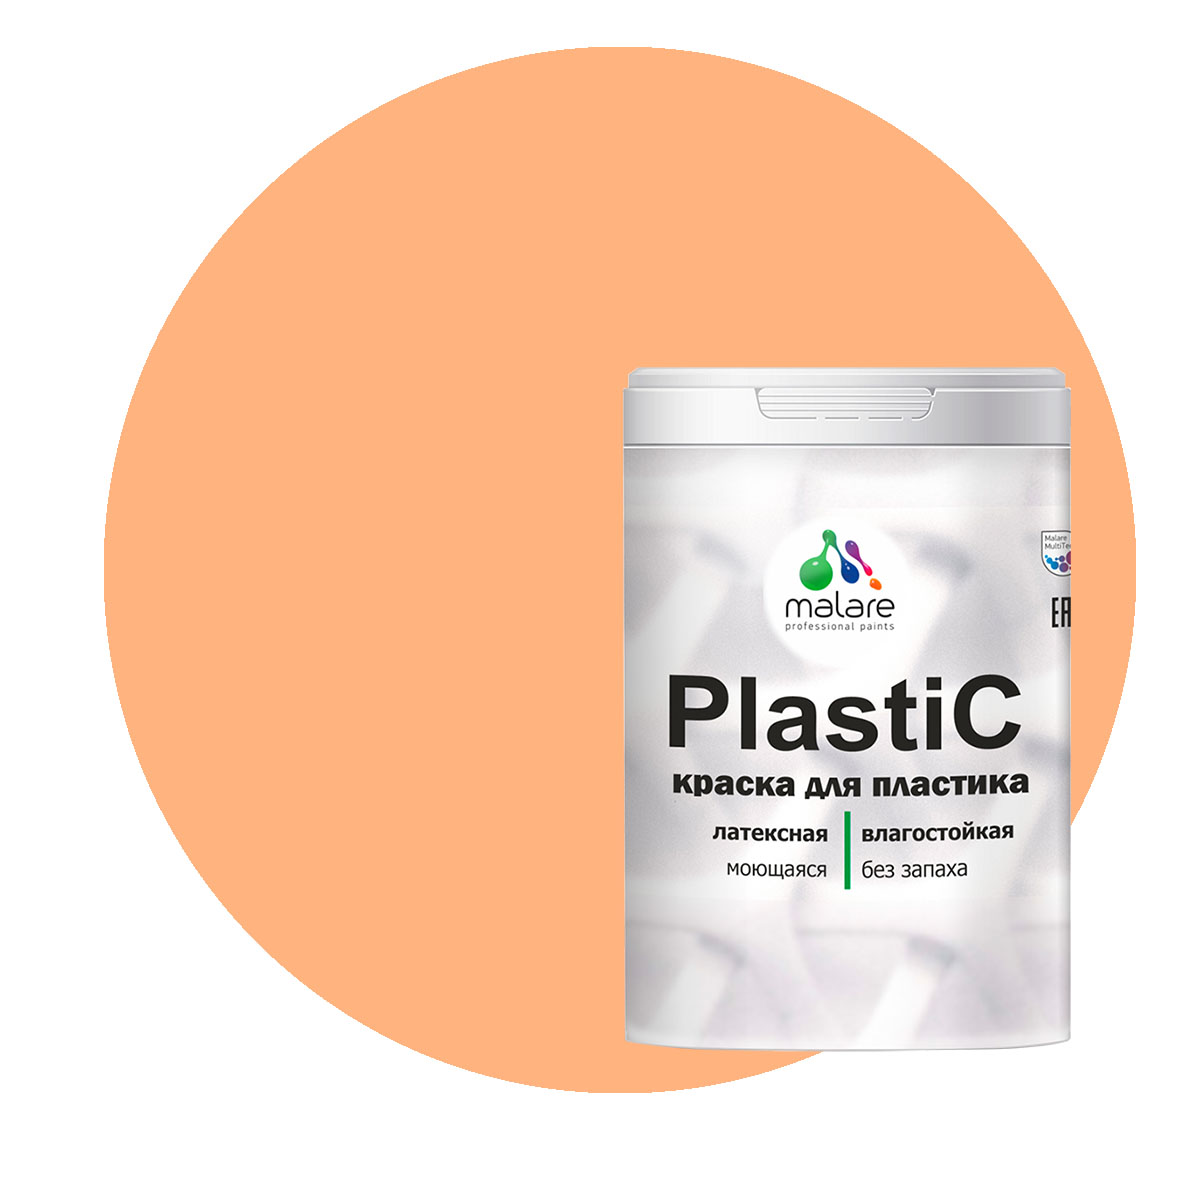 Краска Malare PlastiC для пластика, ПВХ, для сайдинга, свежая охра, 1 кг. краска malare plastic для пластика пвх для сайдинга свежая охра 2 кг